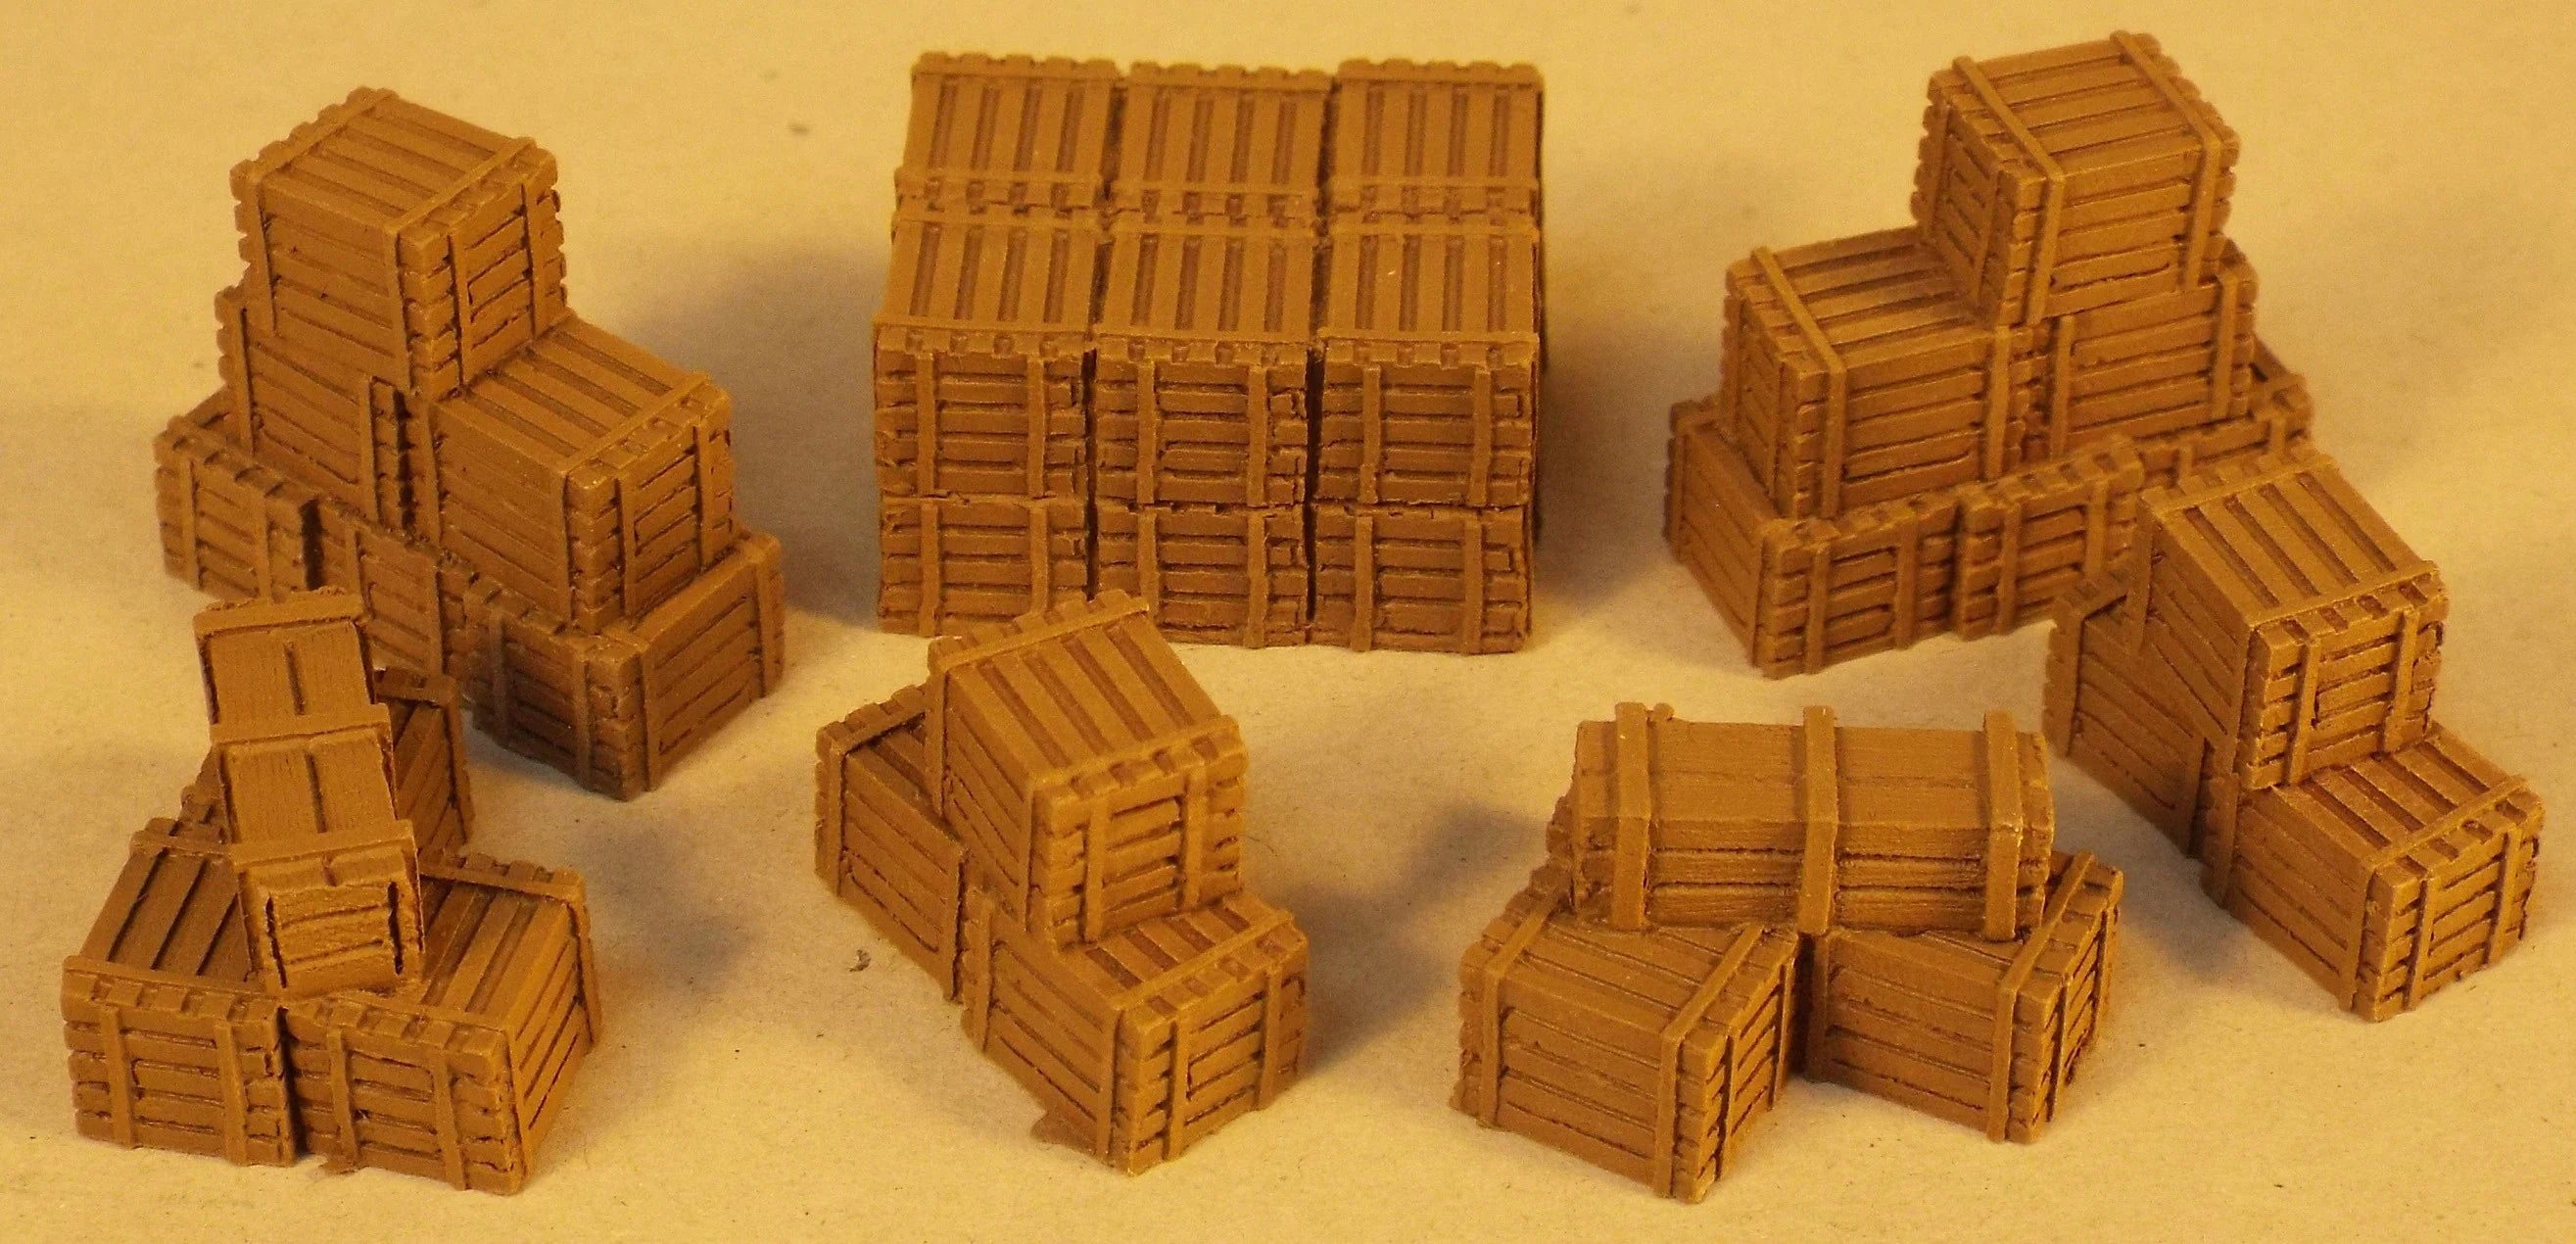 Wooden Crates - Bundle